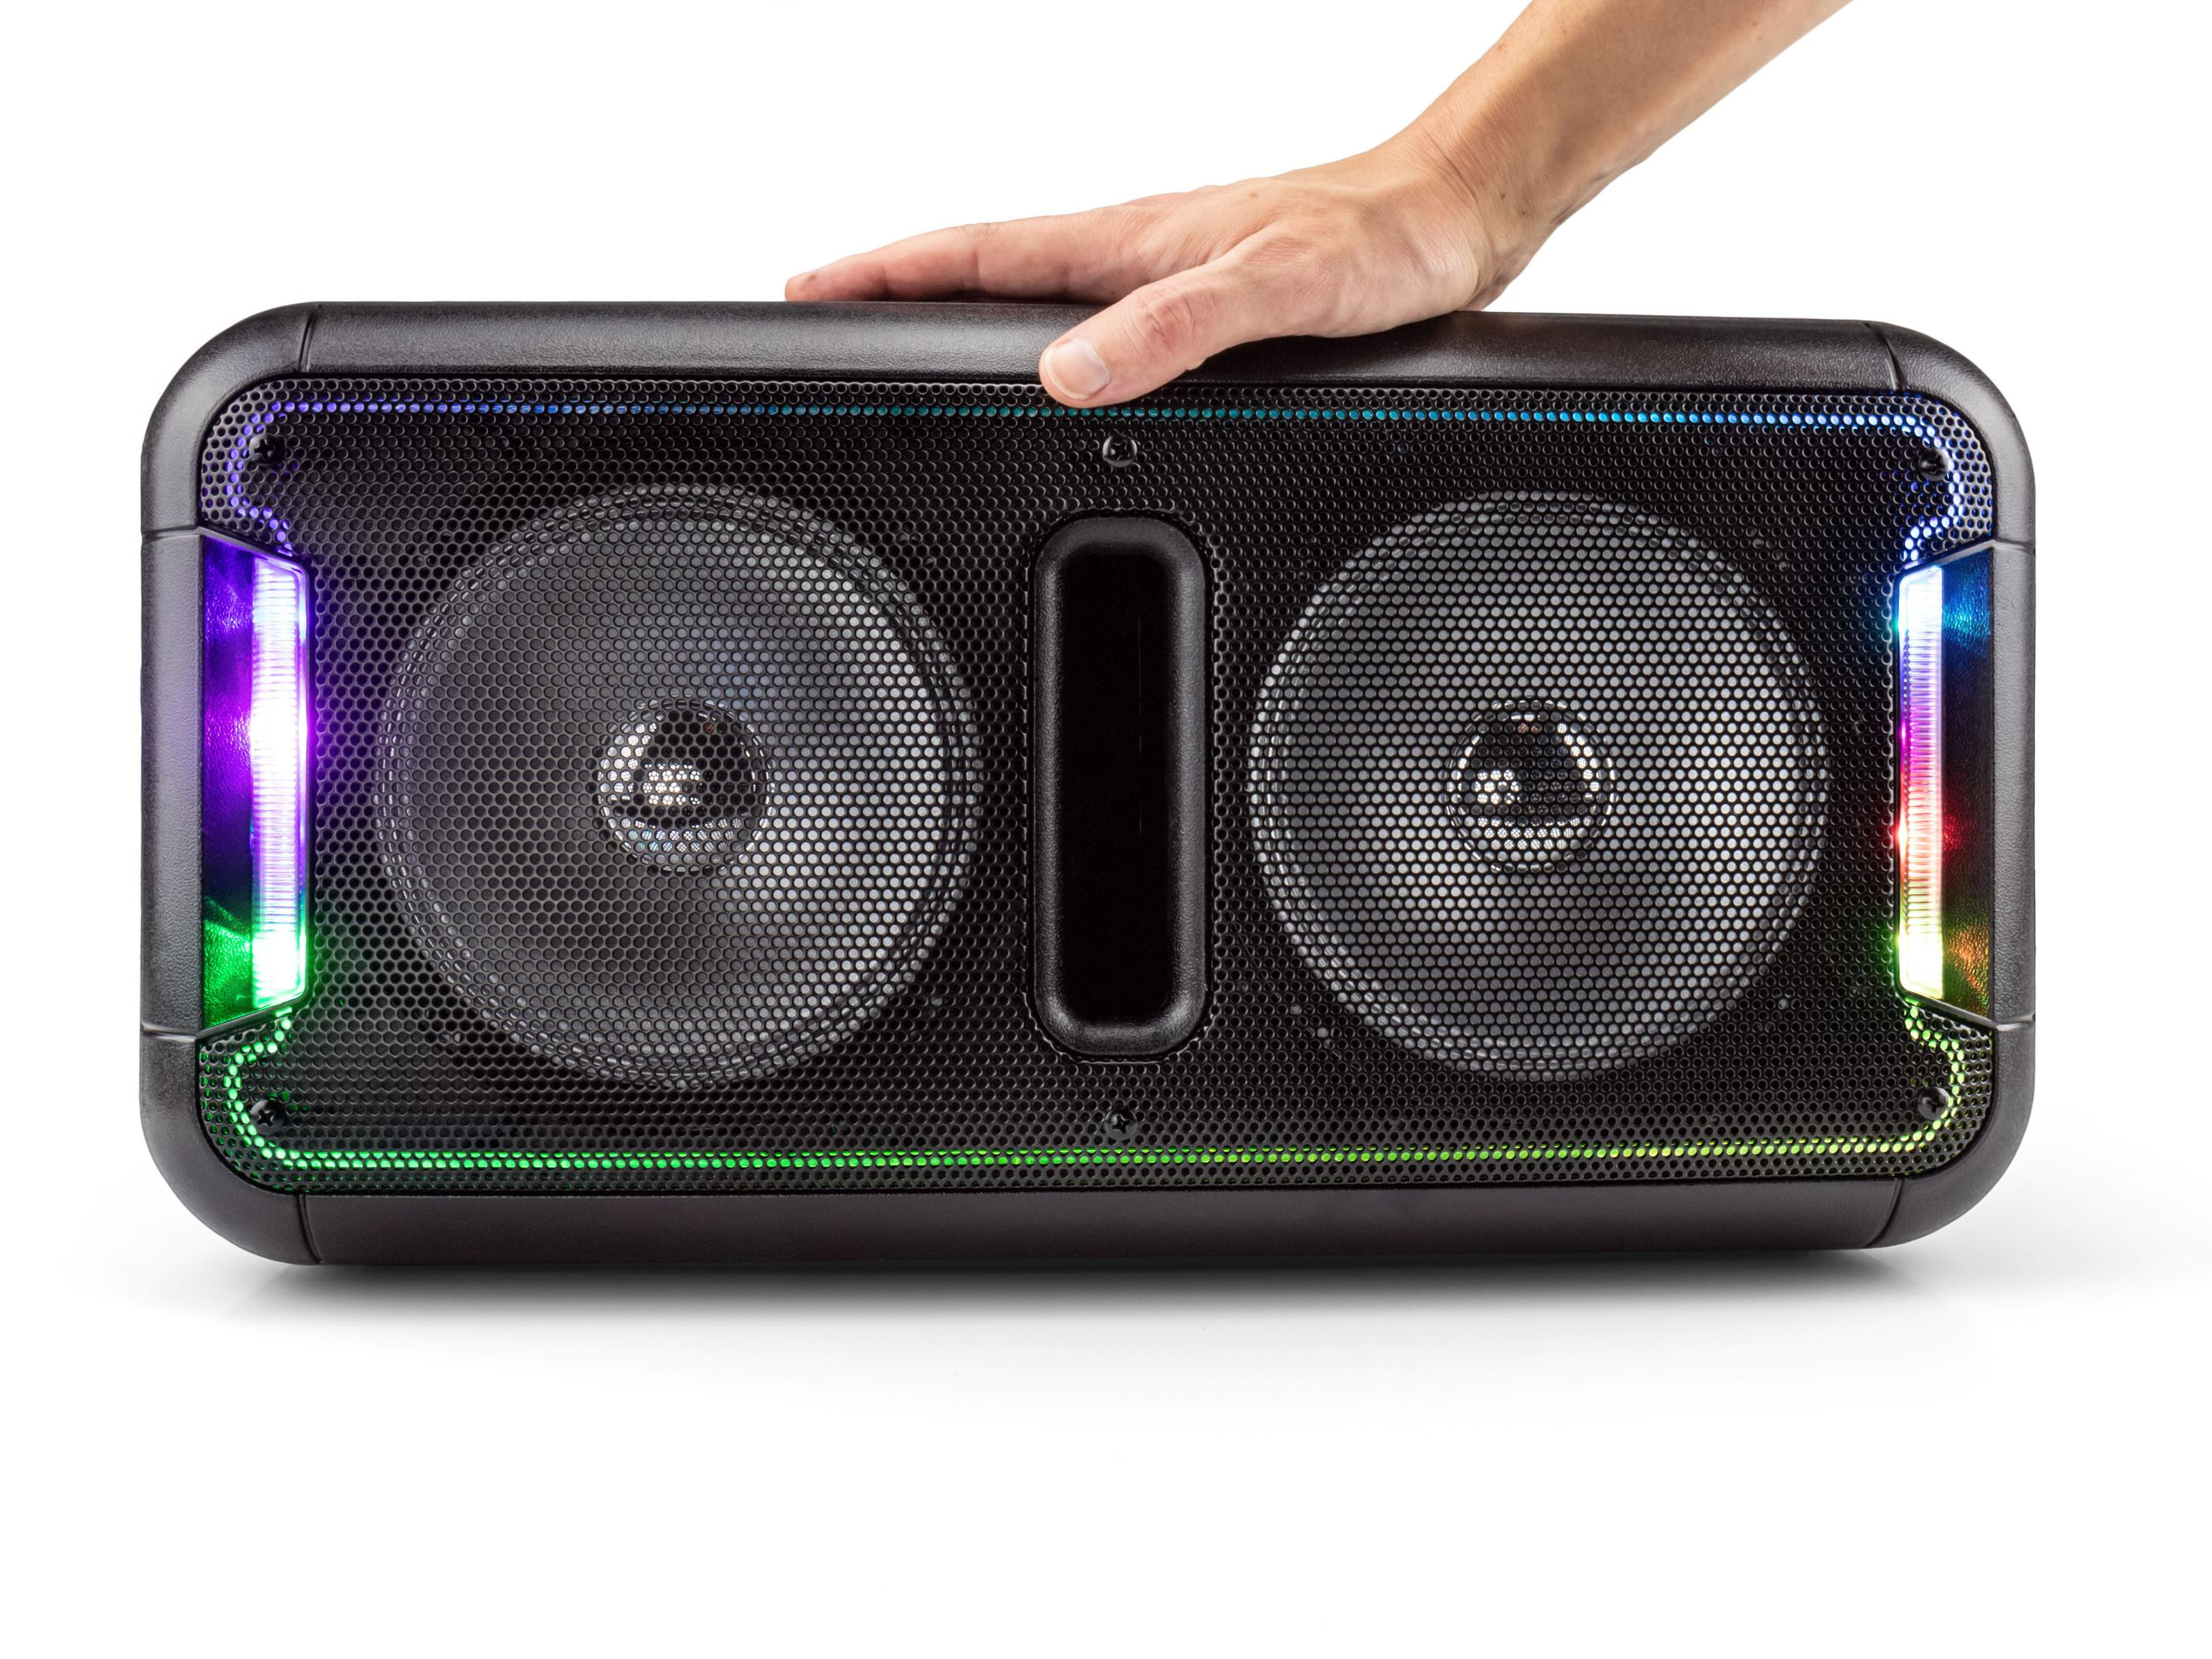 CALIBER HPA502BTL Karaoke -Lautsprecher, Bluetooth Schwarz